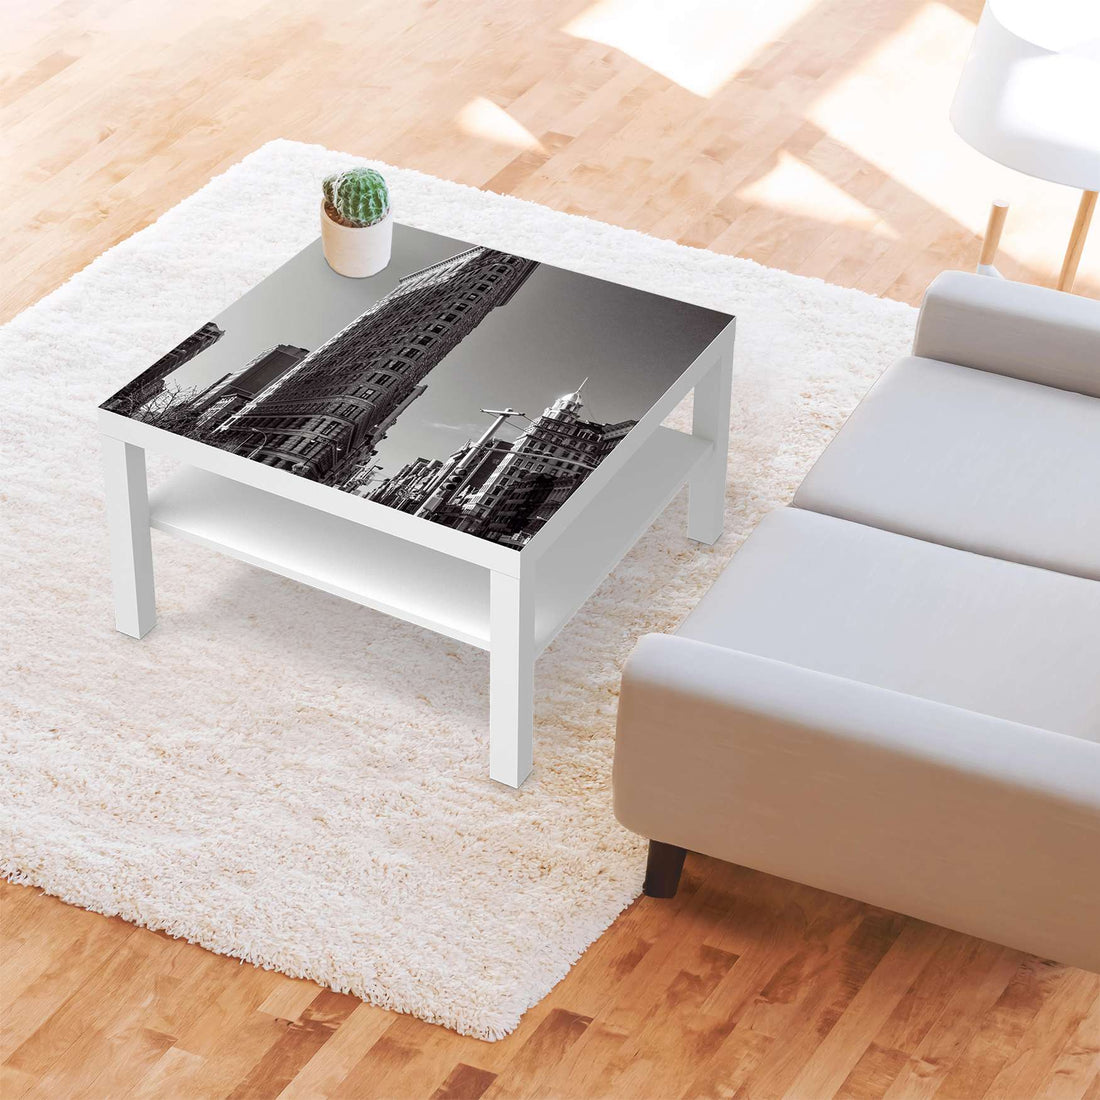 Selbstklebende Folie Manhattan - IKEA Lack Tisch 78x78 cm - Wohnzimmer